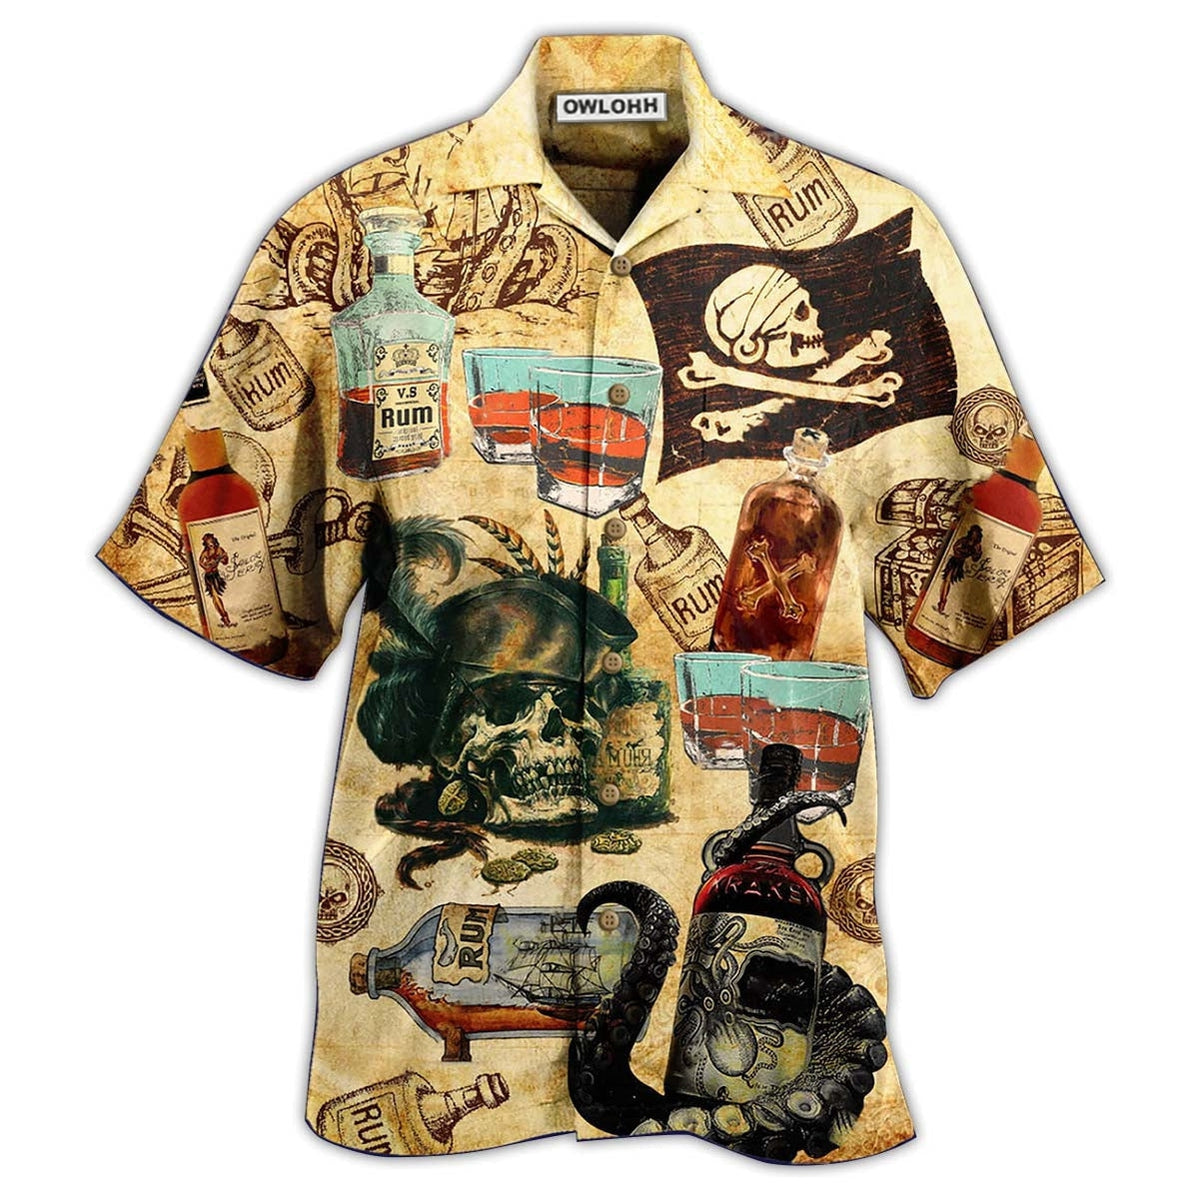 Hawaiian Shirt / Adults / S Wine And Skull My Life - Hawaiian Shirt - Owls Matrix LTD